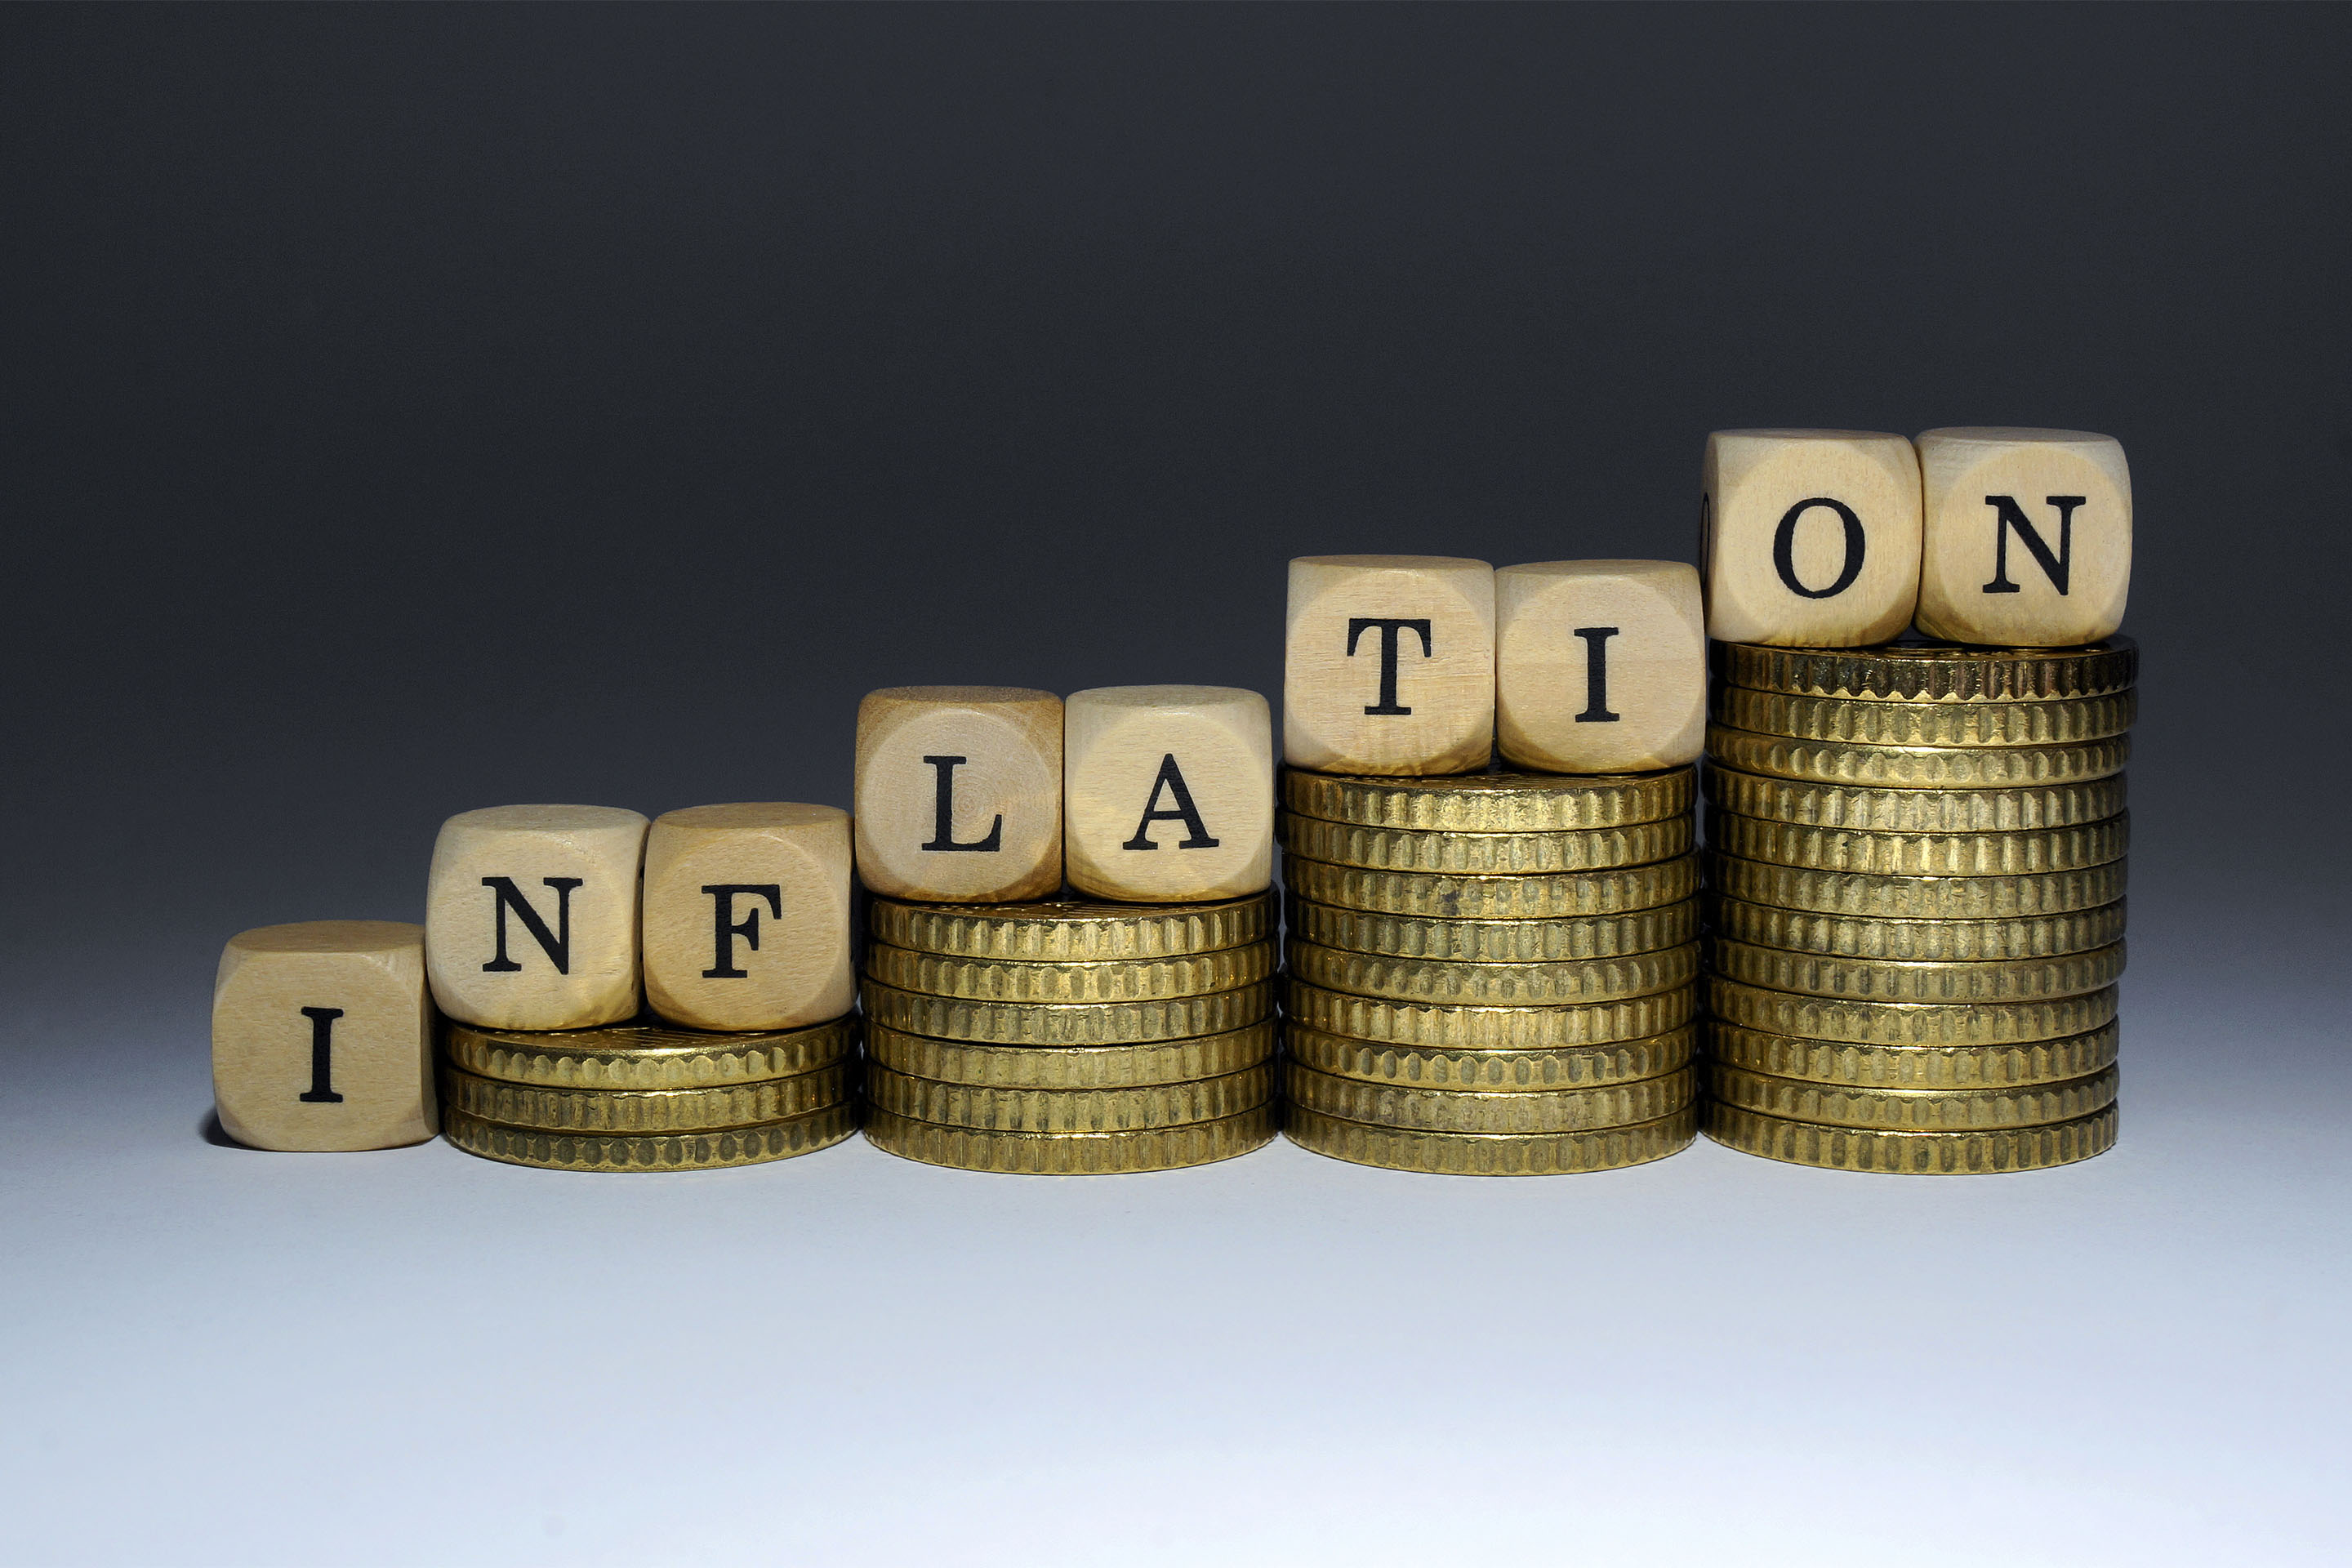 ILLUSTRATION - Buchstabenwürfel auf immer größer werdenden Geldstapeln ergeben das Wort 'Inflation',